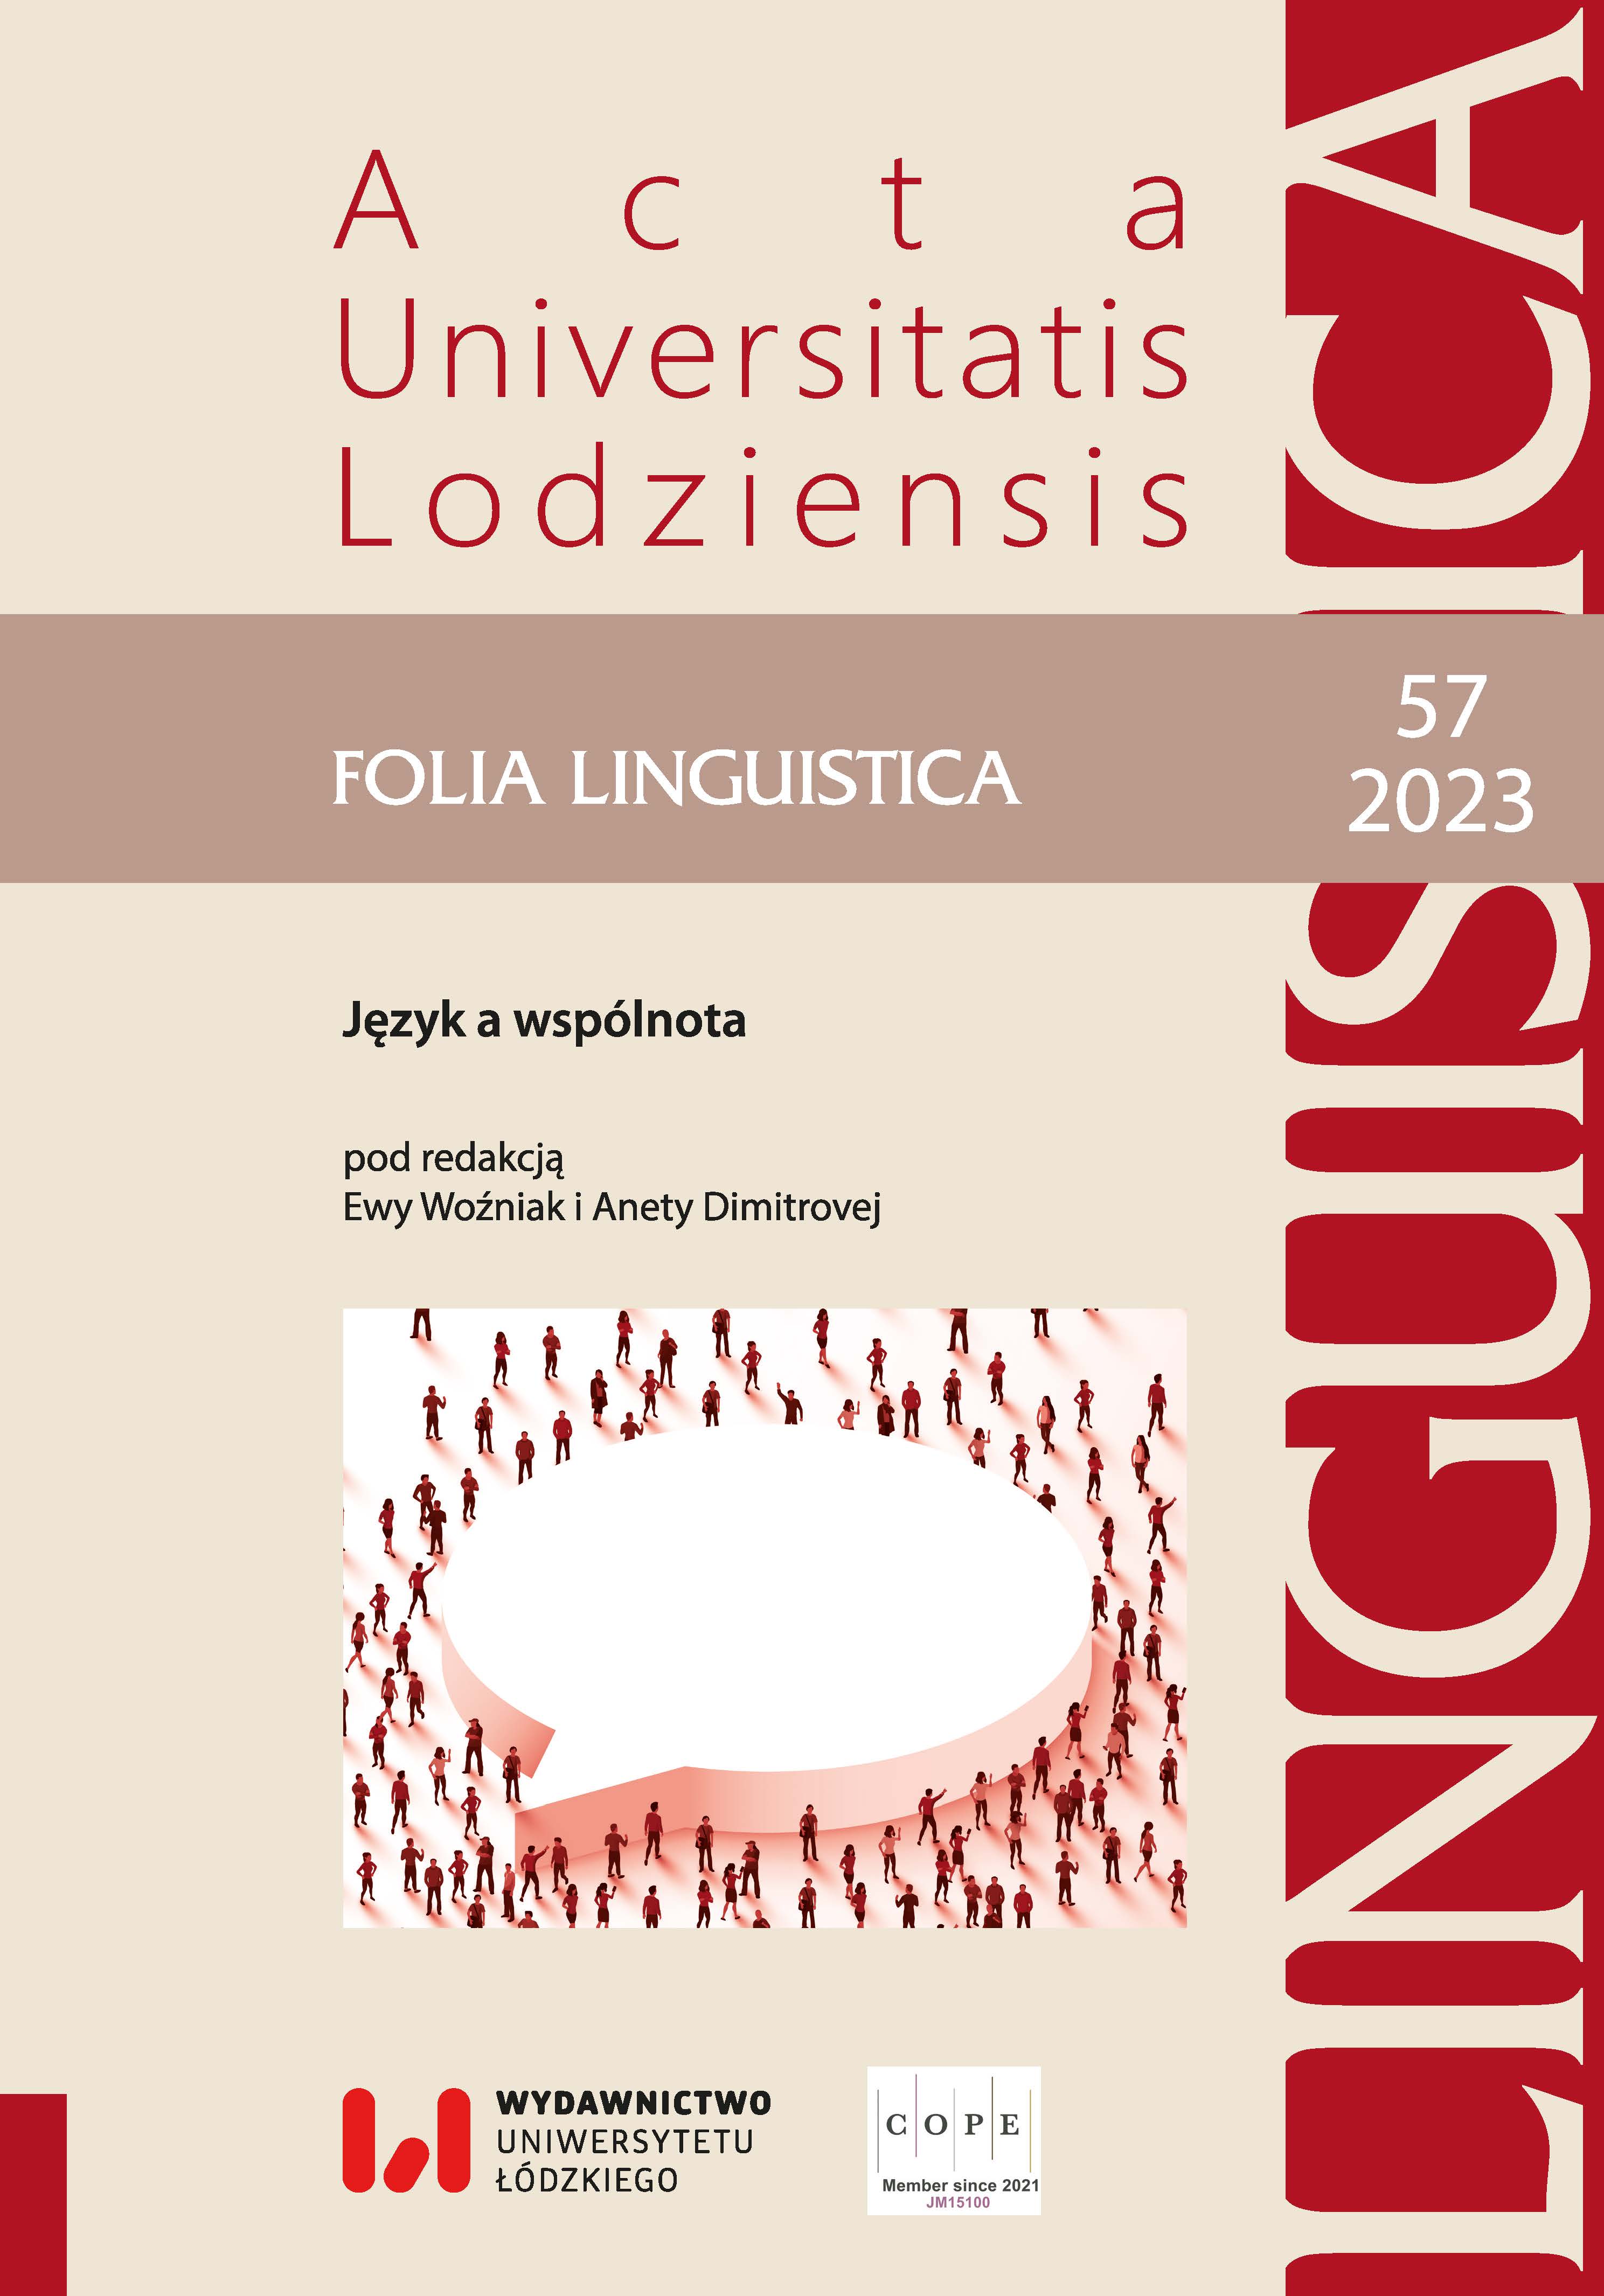 Rola mediacji w nauczaniu języka polskiego jako obcego w edukacji akademickiej